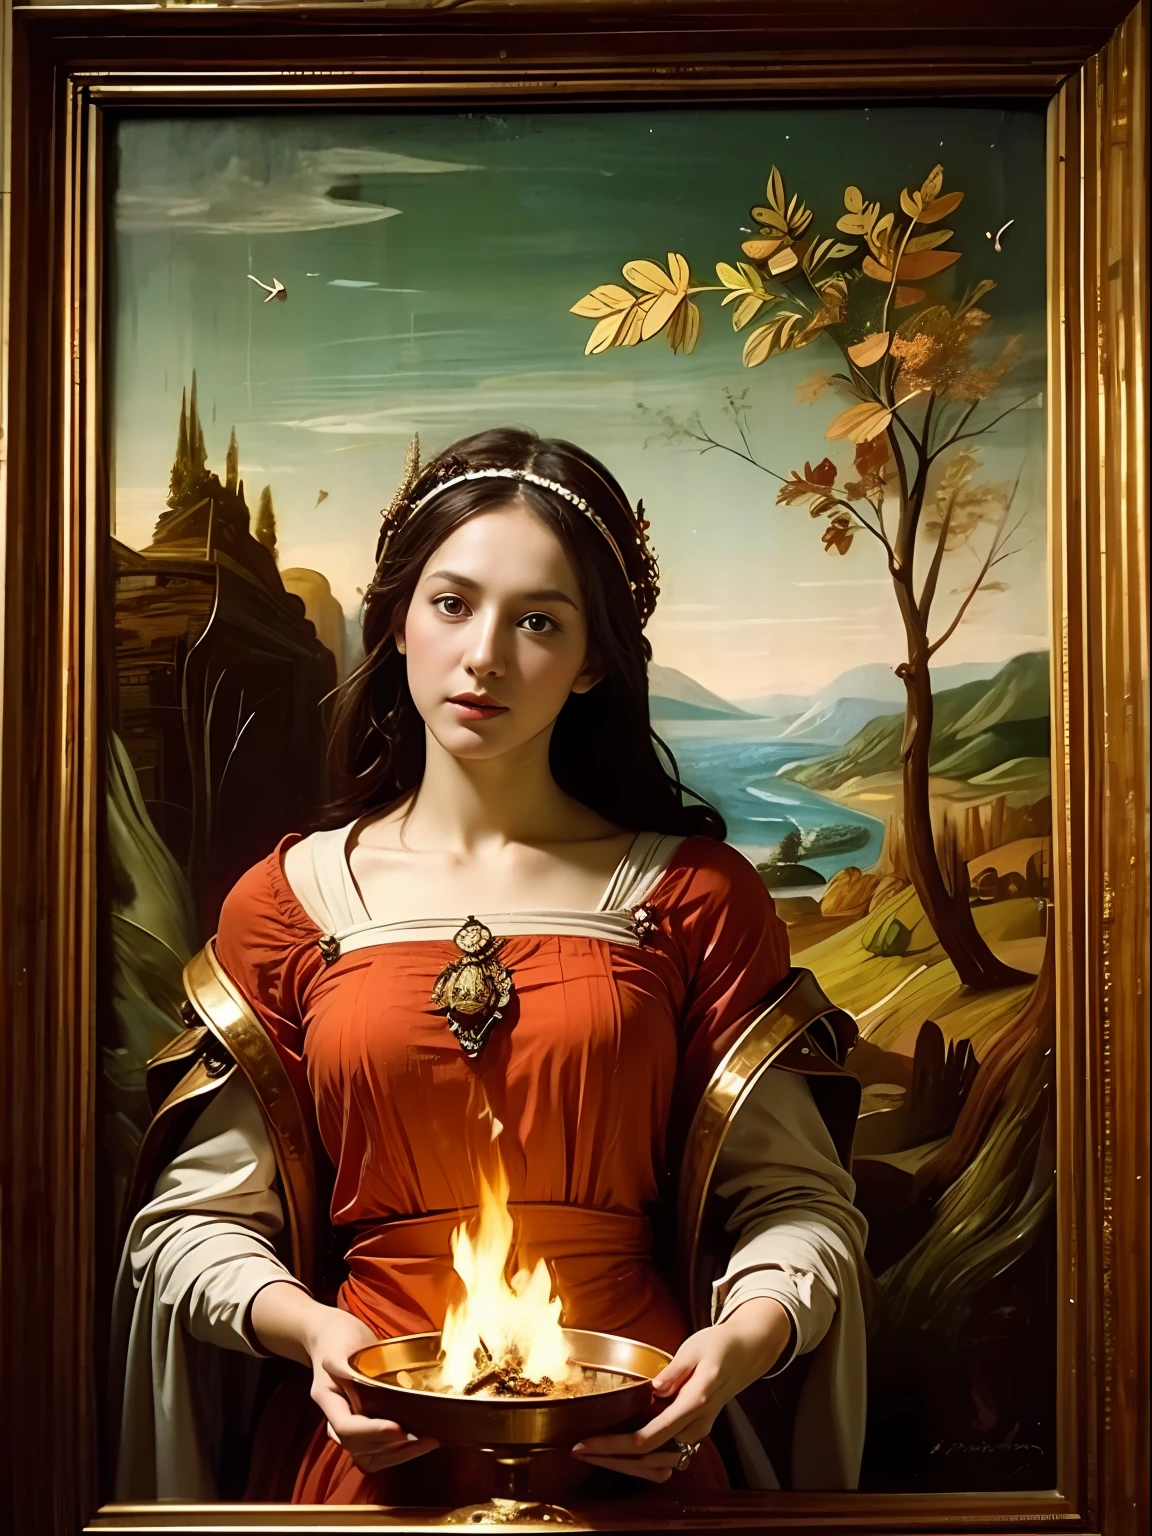 "(((文藝復興繪畫))) 布里吉特, 凱爾特女神, 手持野酢漿草枝，身著秋色飄逸衣裳. 她的銅色頭髮在燈光下閃閃發光, 她頭上的火焰高高地散發著魔法和神秘的氣息.